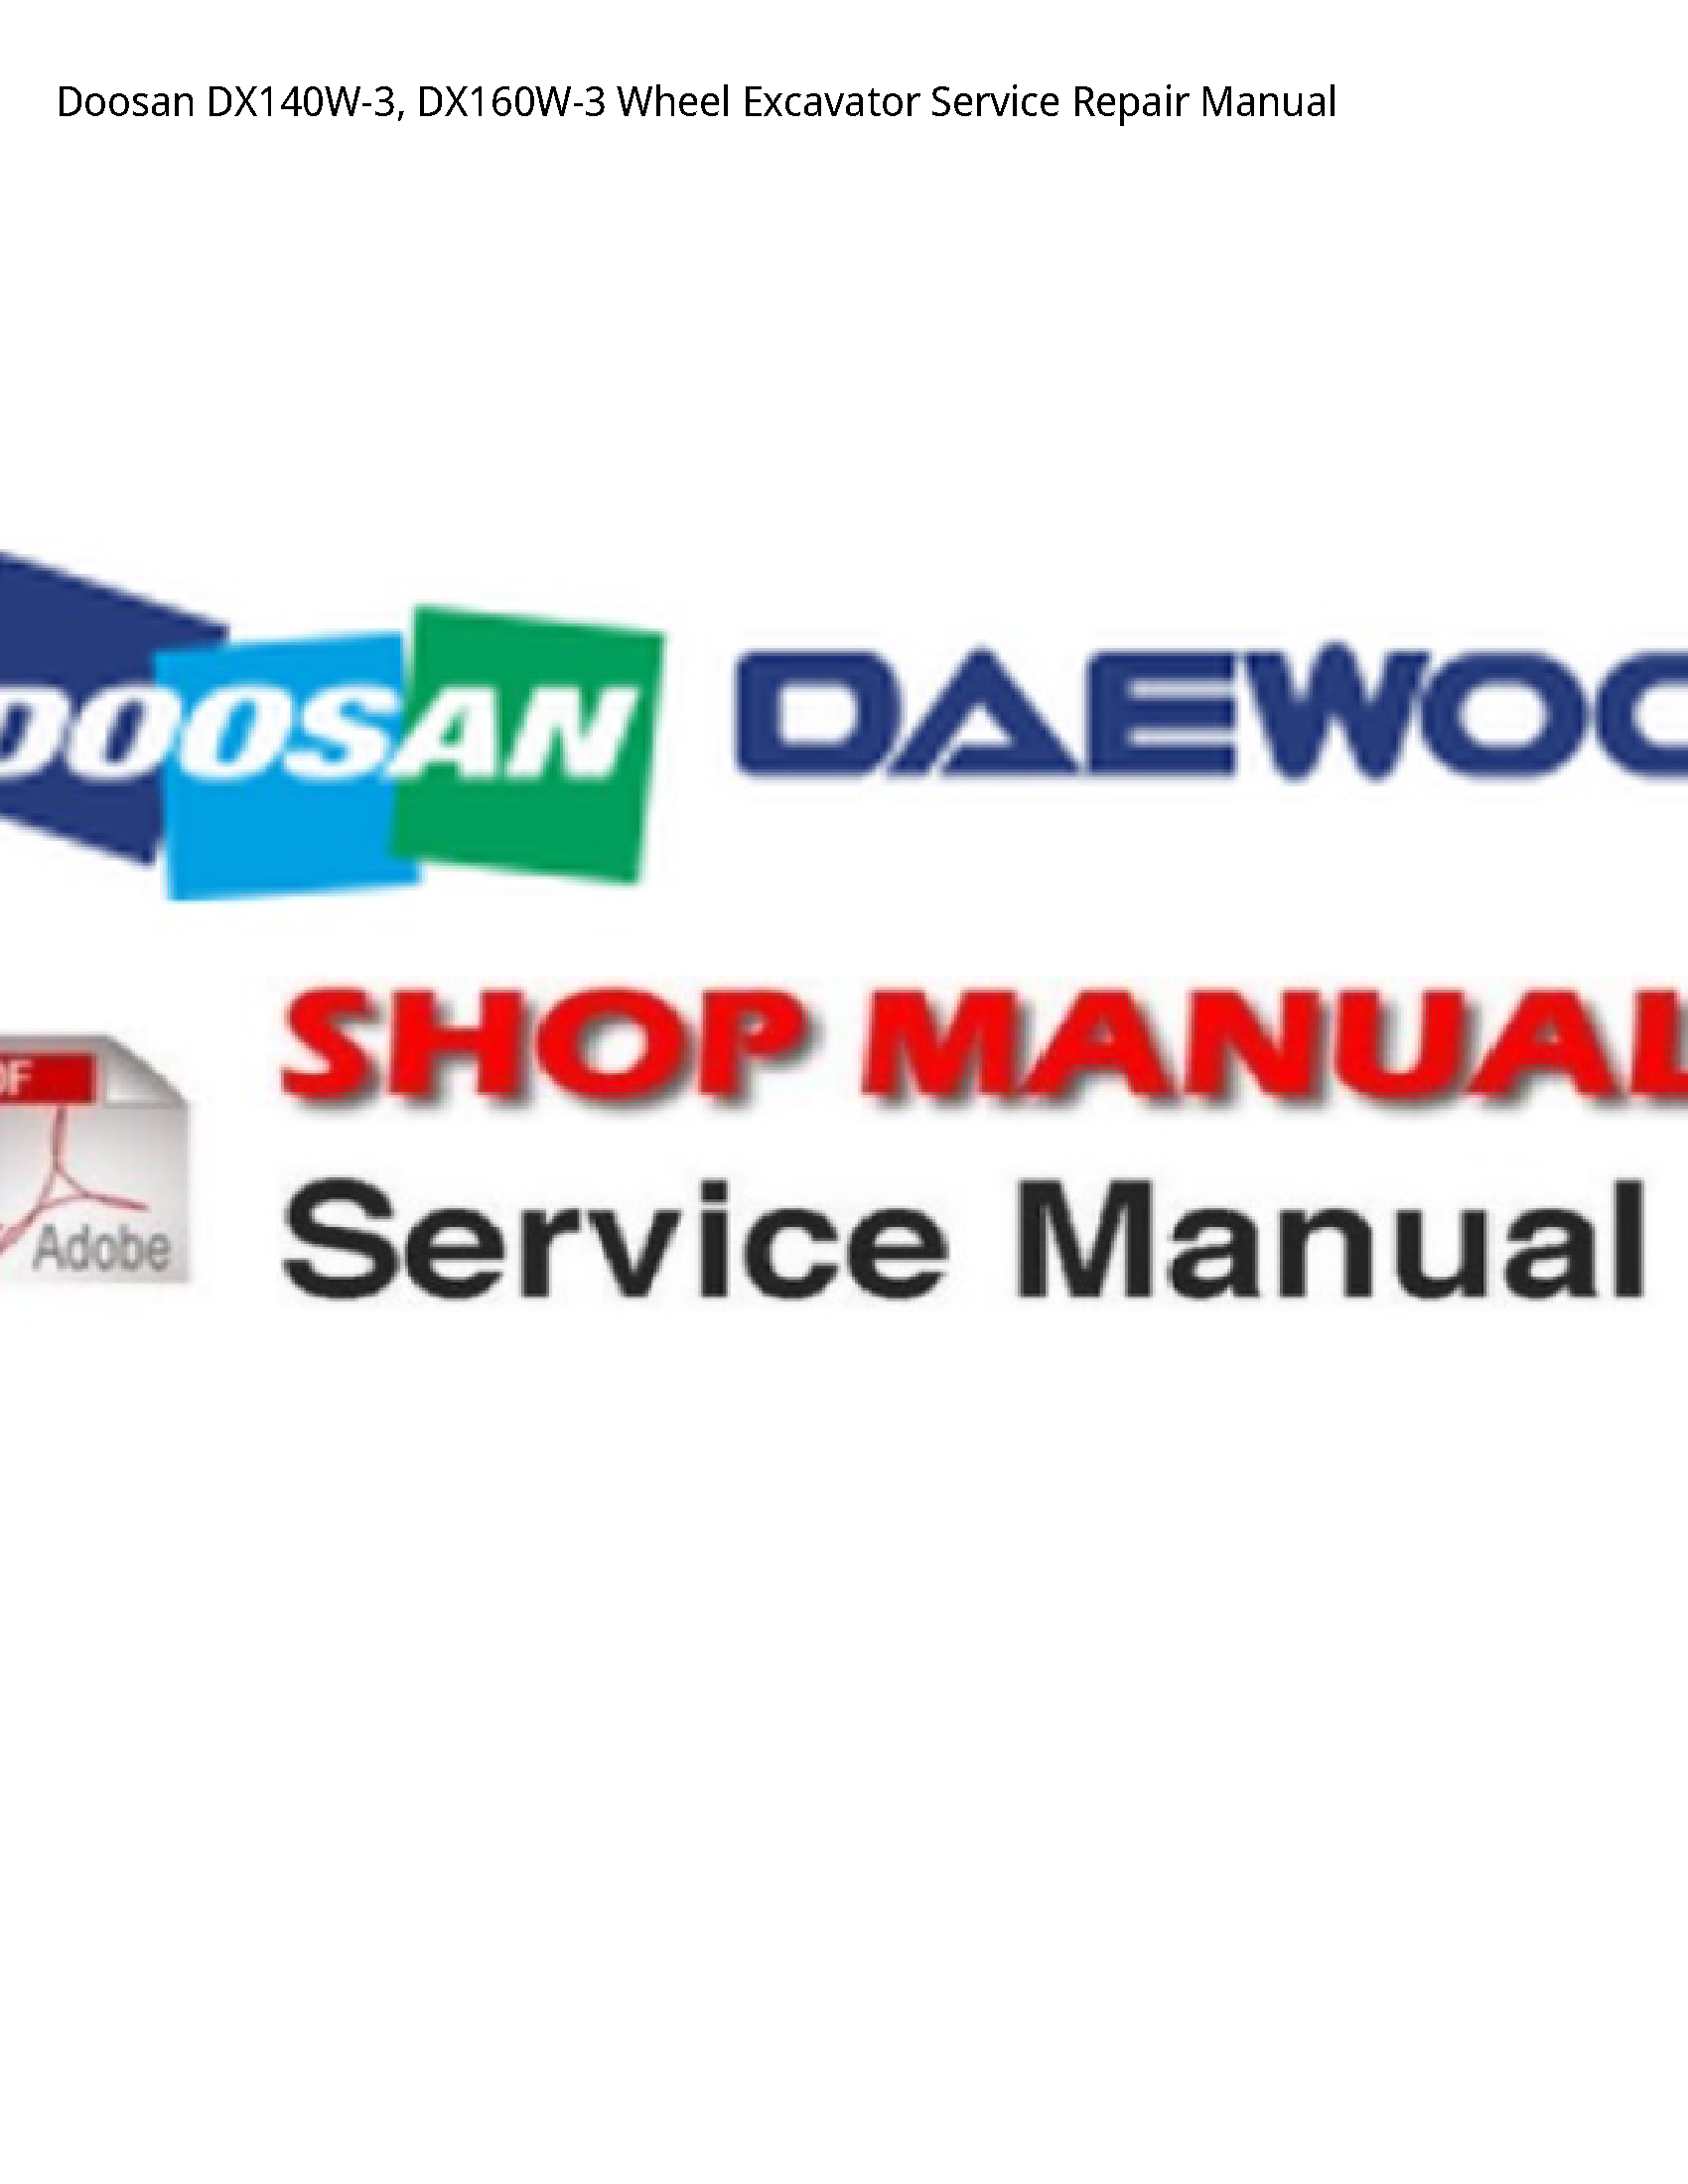 Doosan DX140W-3 Wheel Excavator manual